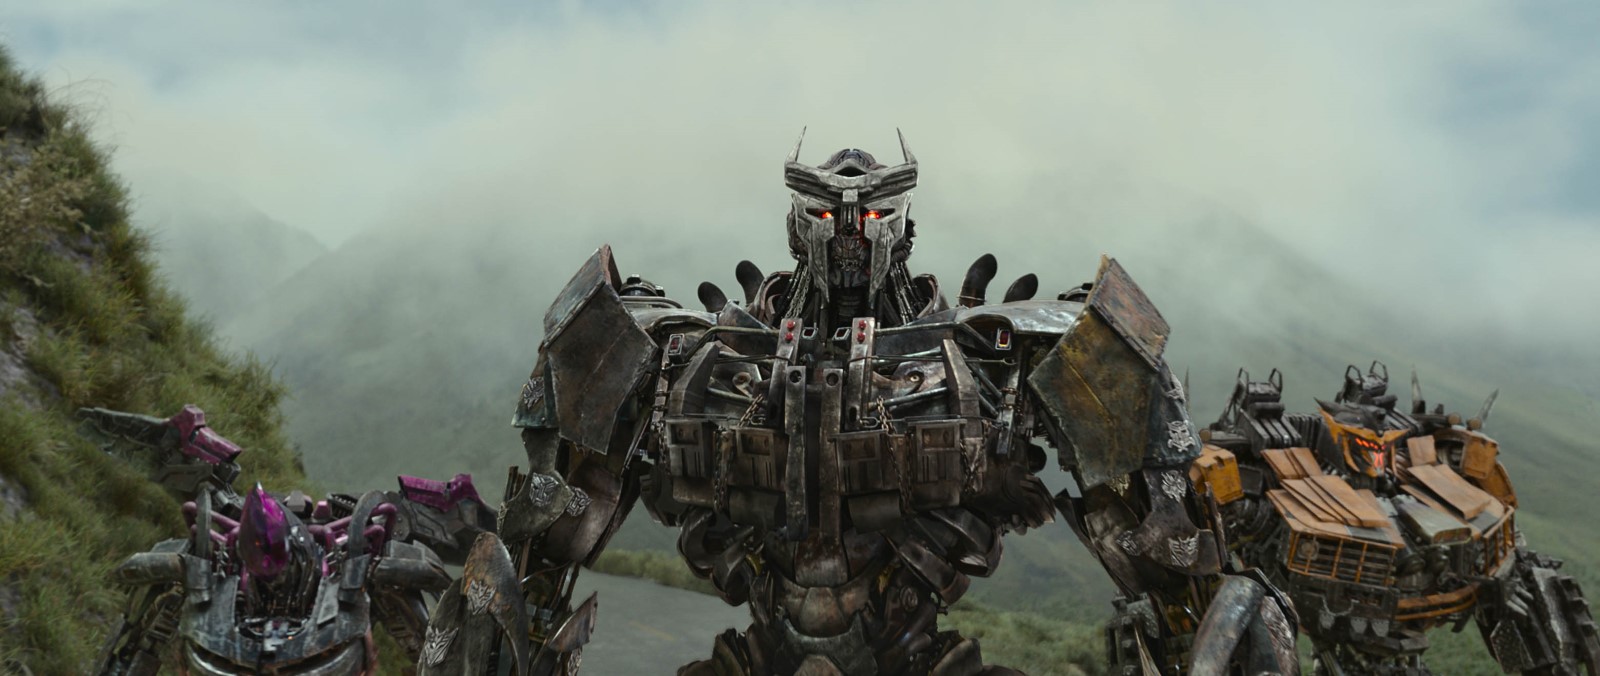 Foto do filme Transformers: O Despertar das Feras - Foto 8 de 40 -  AdoroCinema